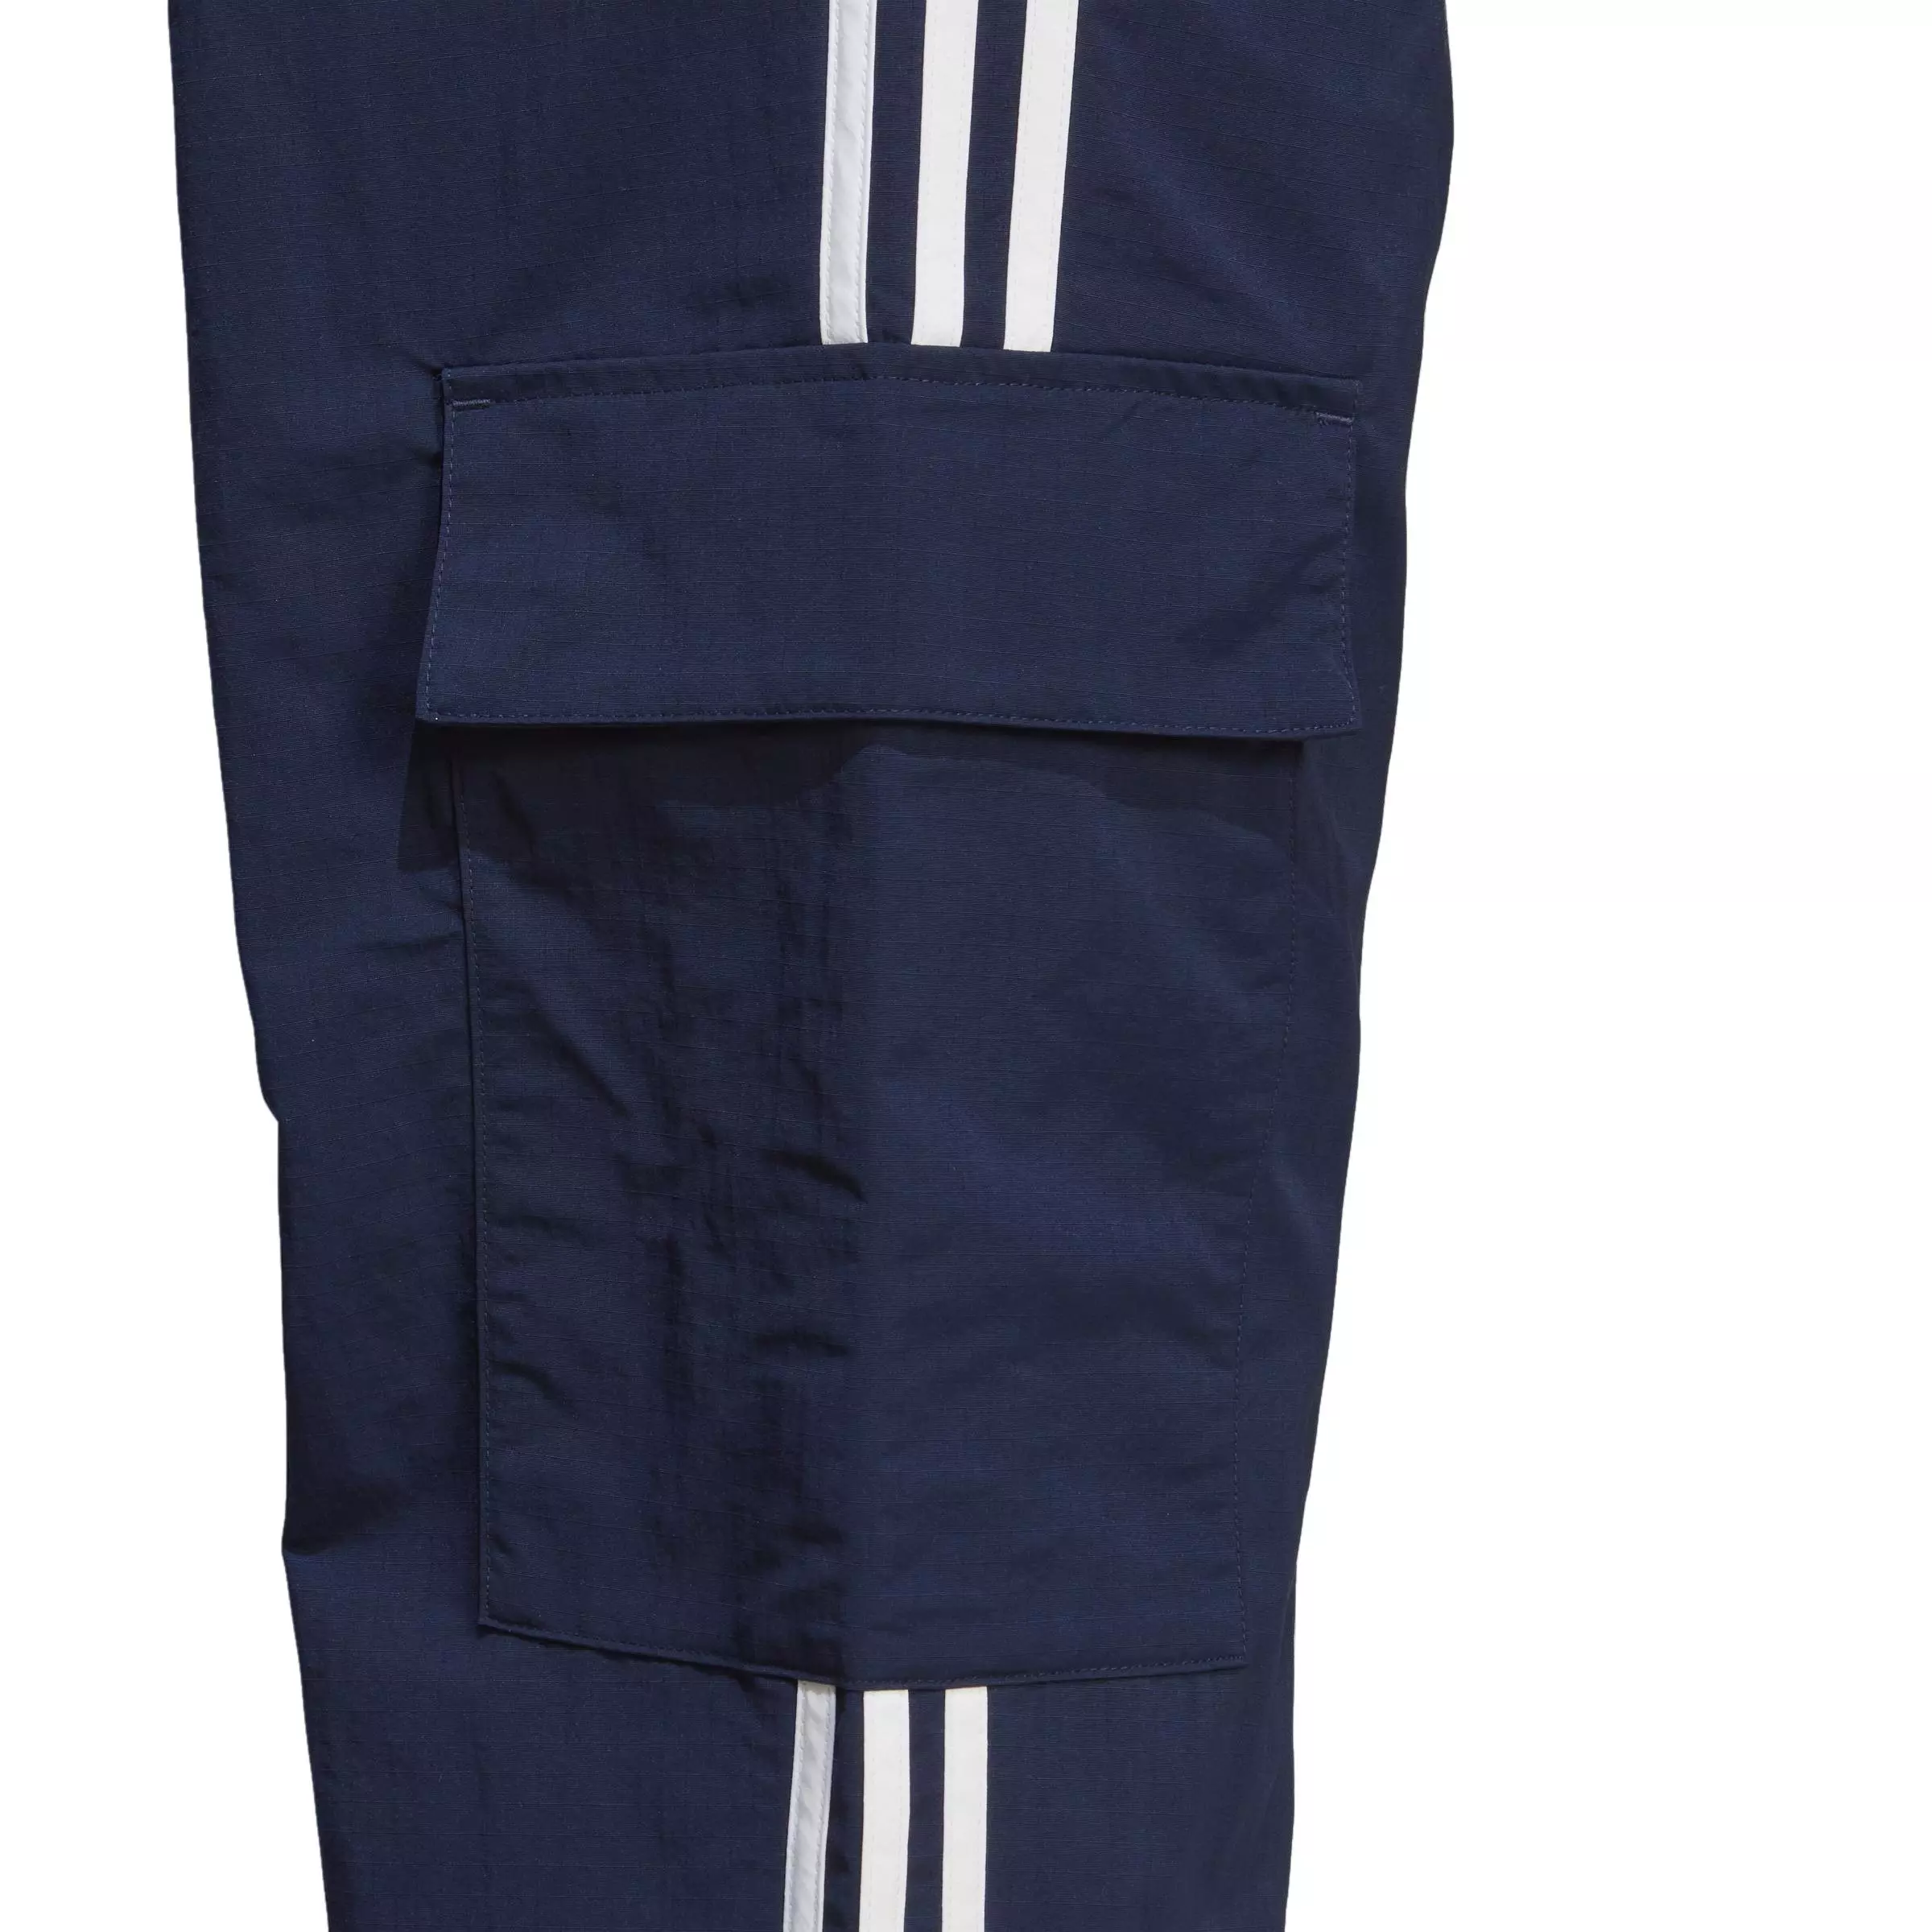 Adidas Originals Adicolor Classics 3-Stripes Cargo Pants, Pants